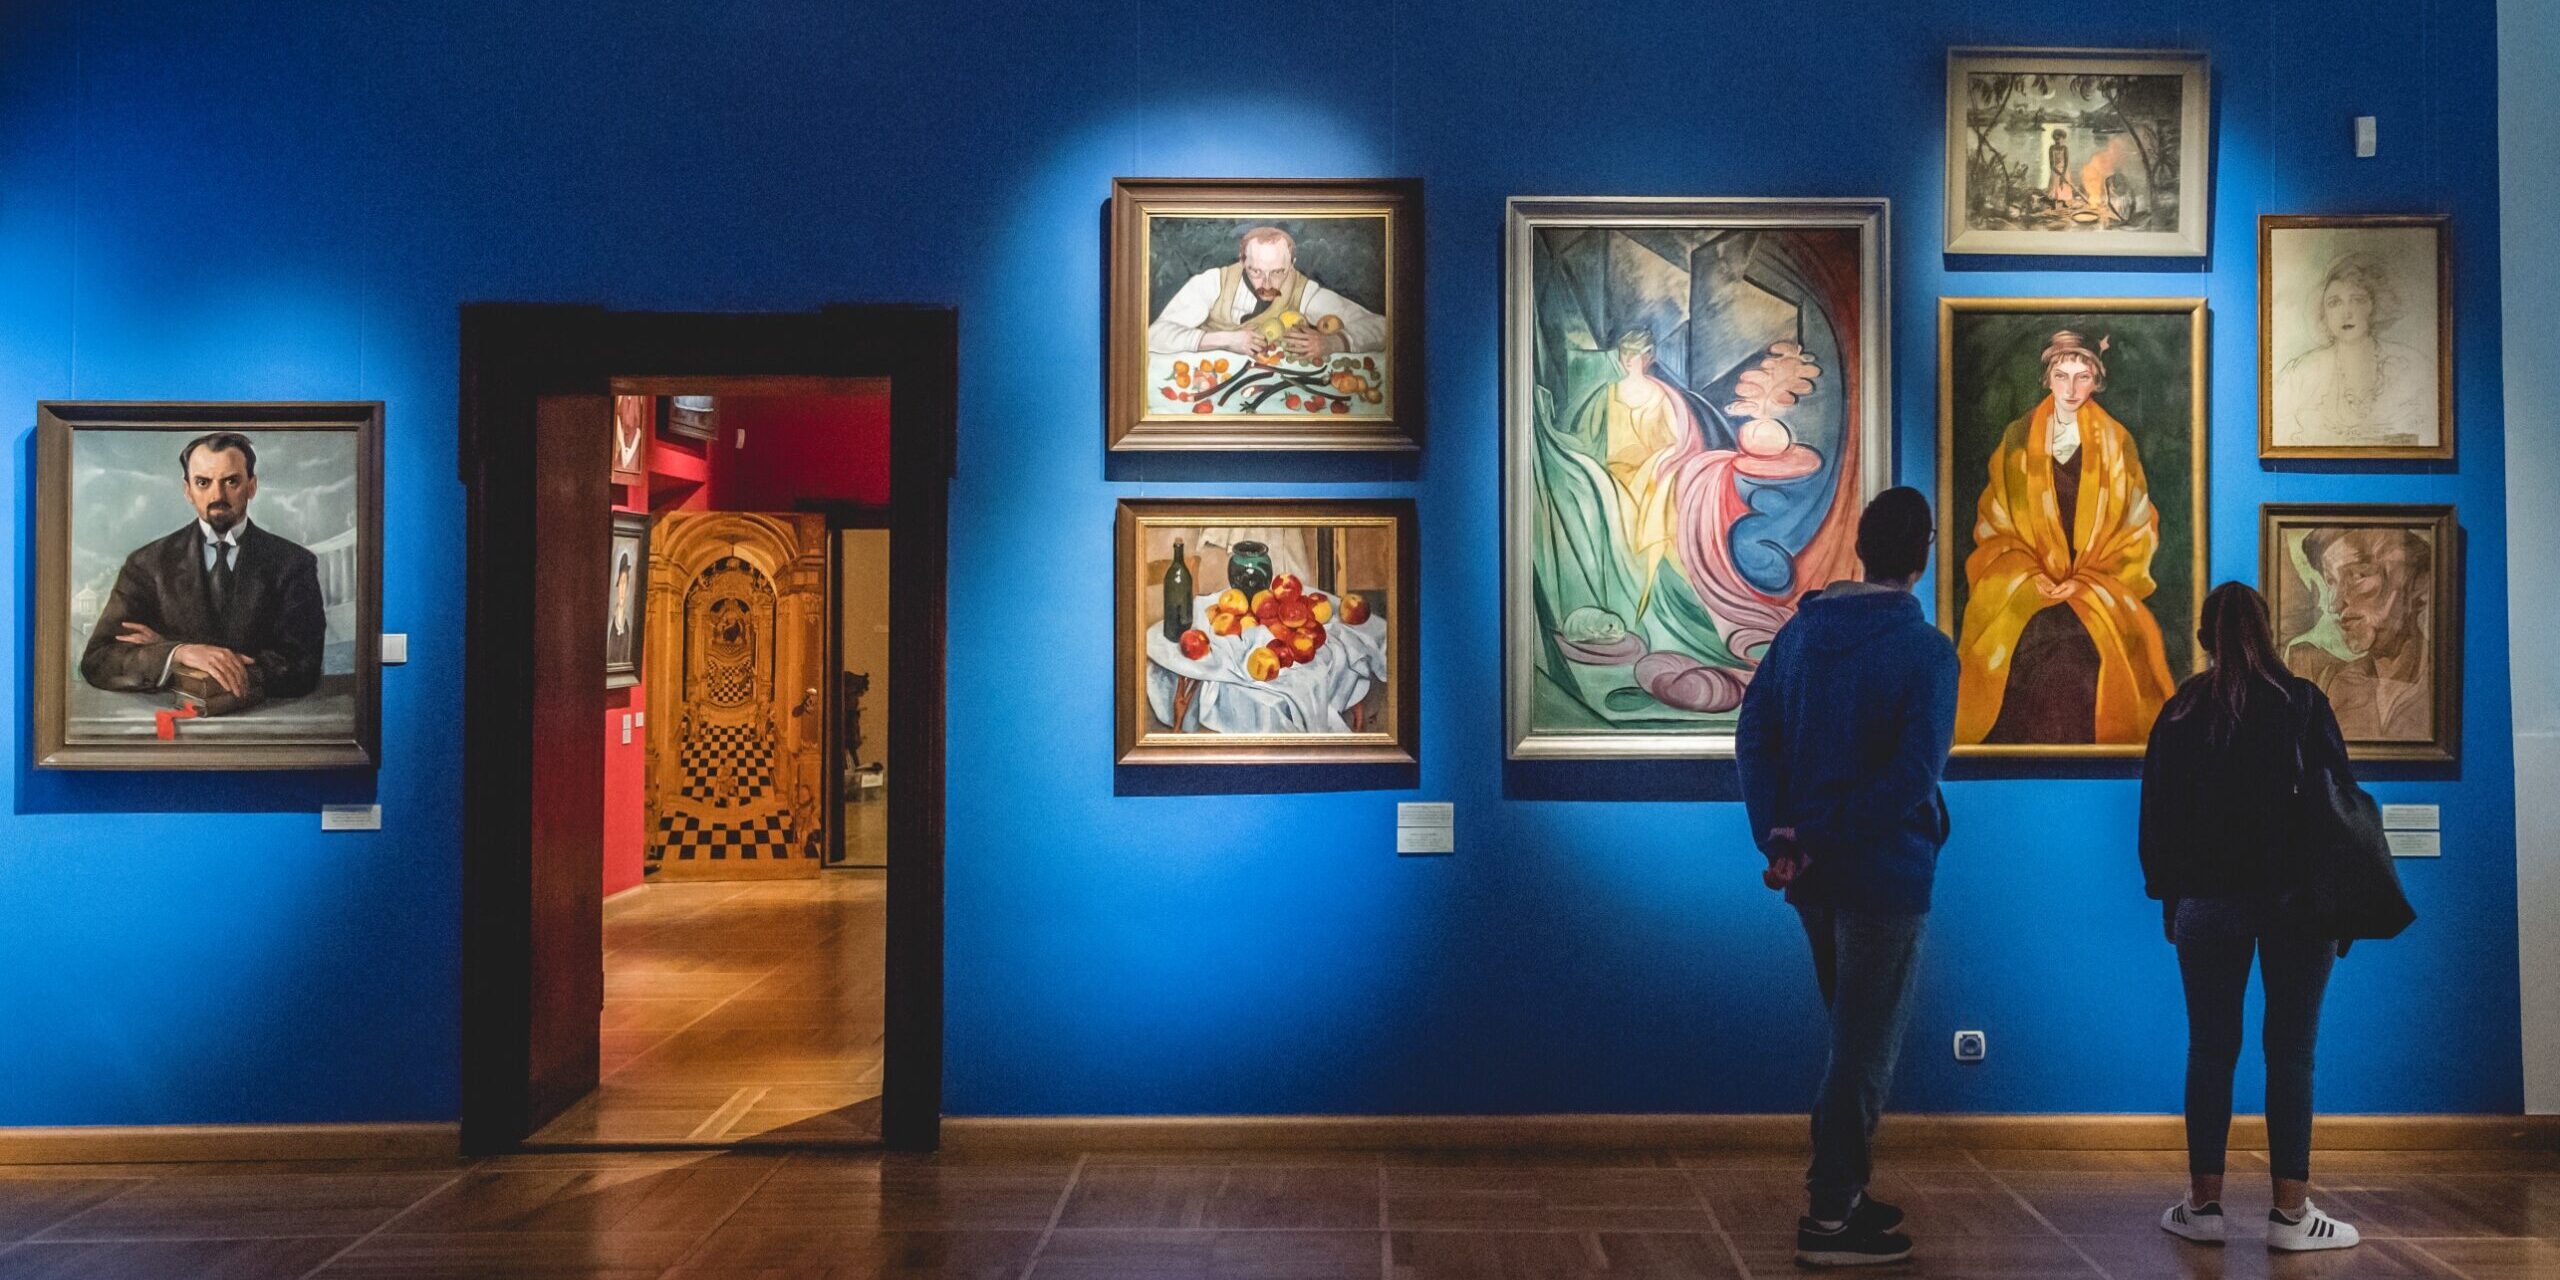 Fotografia przedstawia dwoje ludzi ujetych od tyłu oglądających obrazy zawieszone na ścianie galerii.